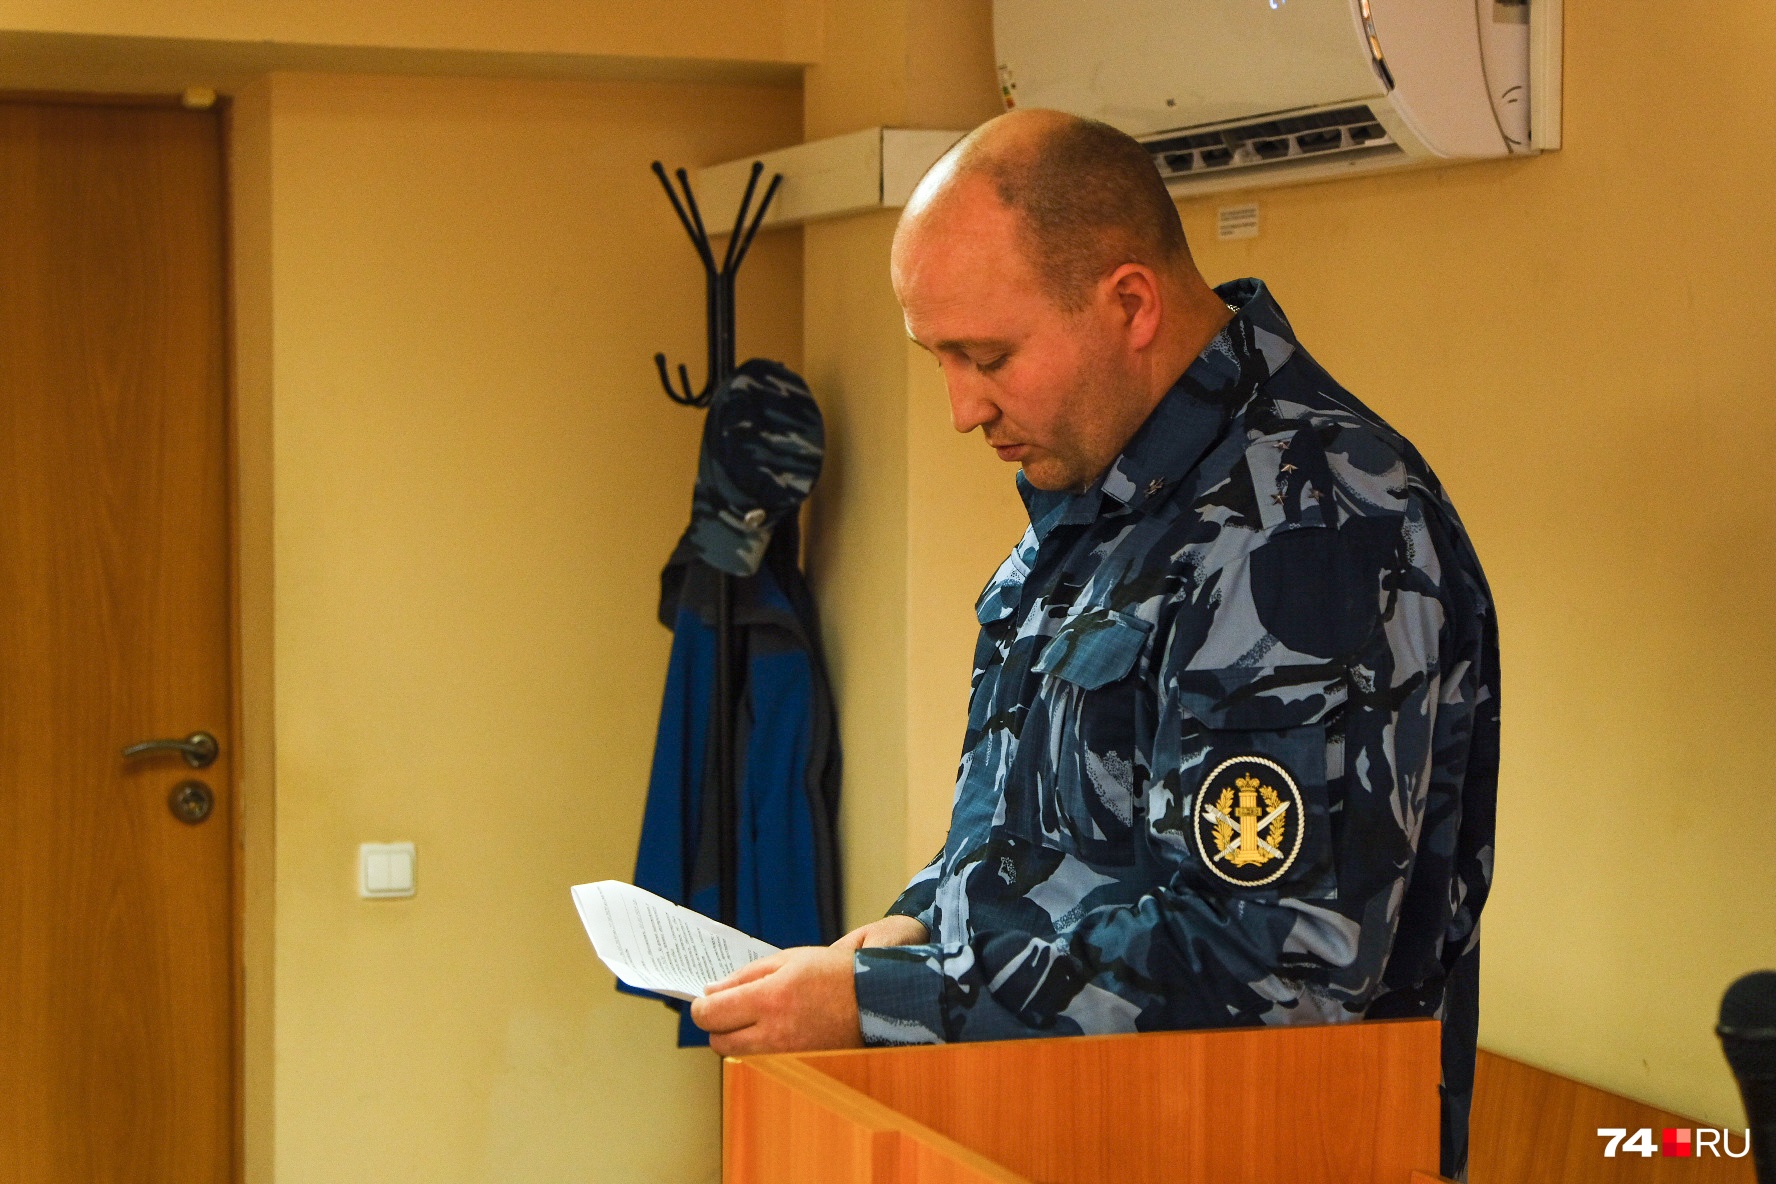 Представитель ГУФСИН сообщил, что экс-мэр Челябинска во время пребывания в следственном изоляторе нарушений не допустил